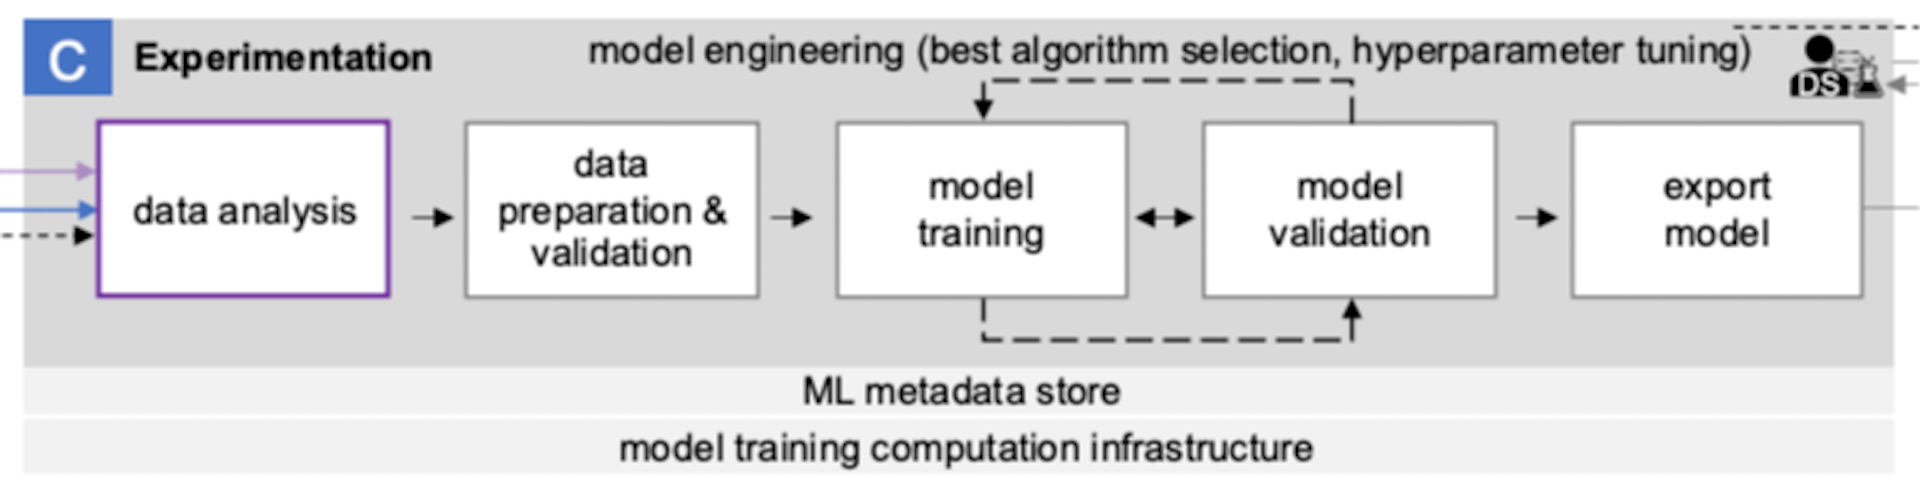 Zona de experimentación de ML en arquitectura MLOps de extremo a extremo